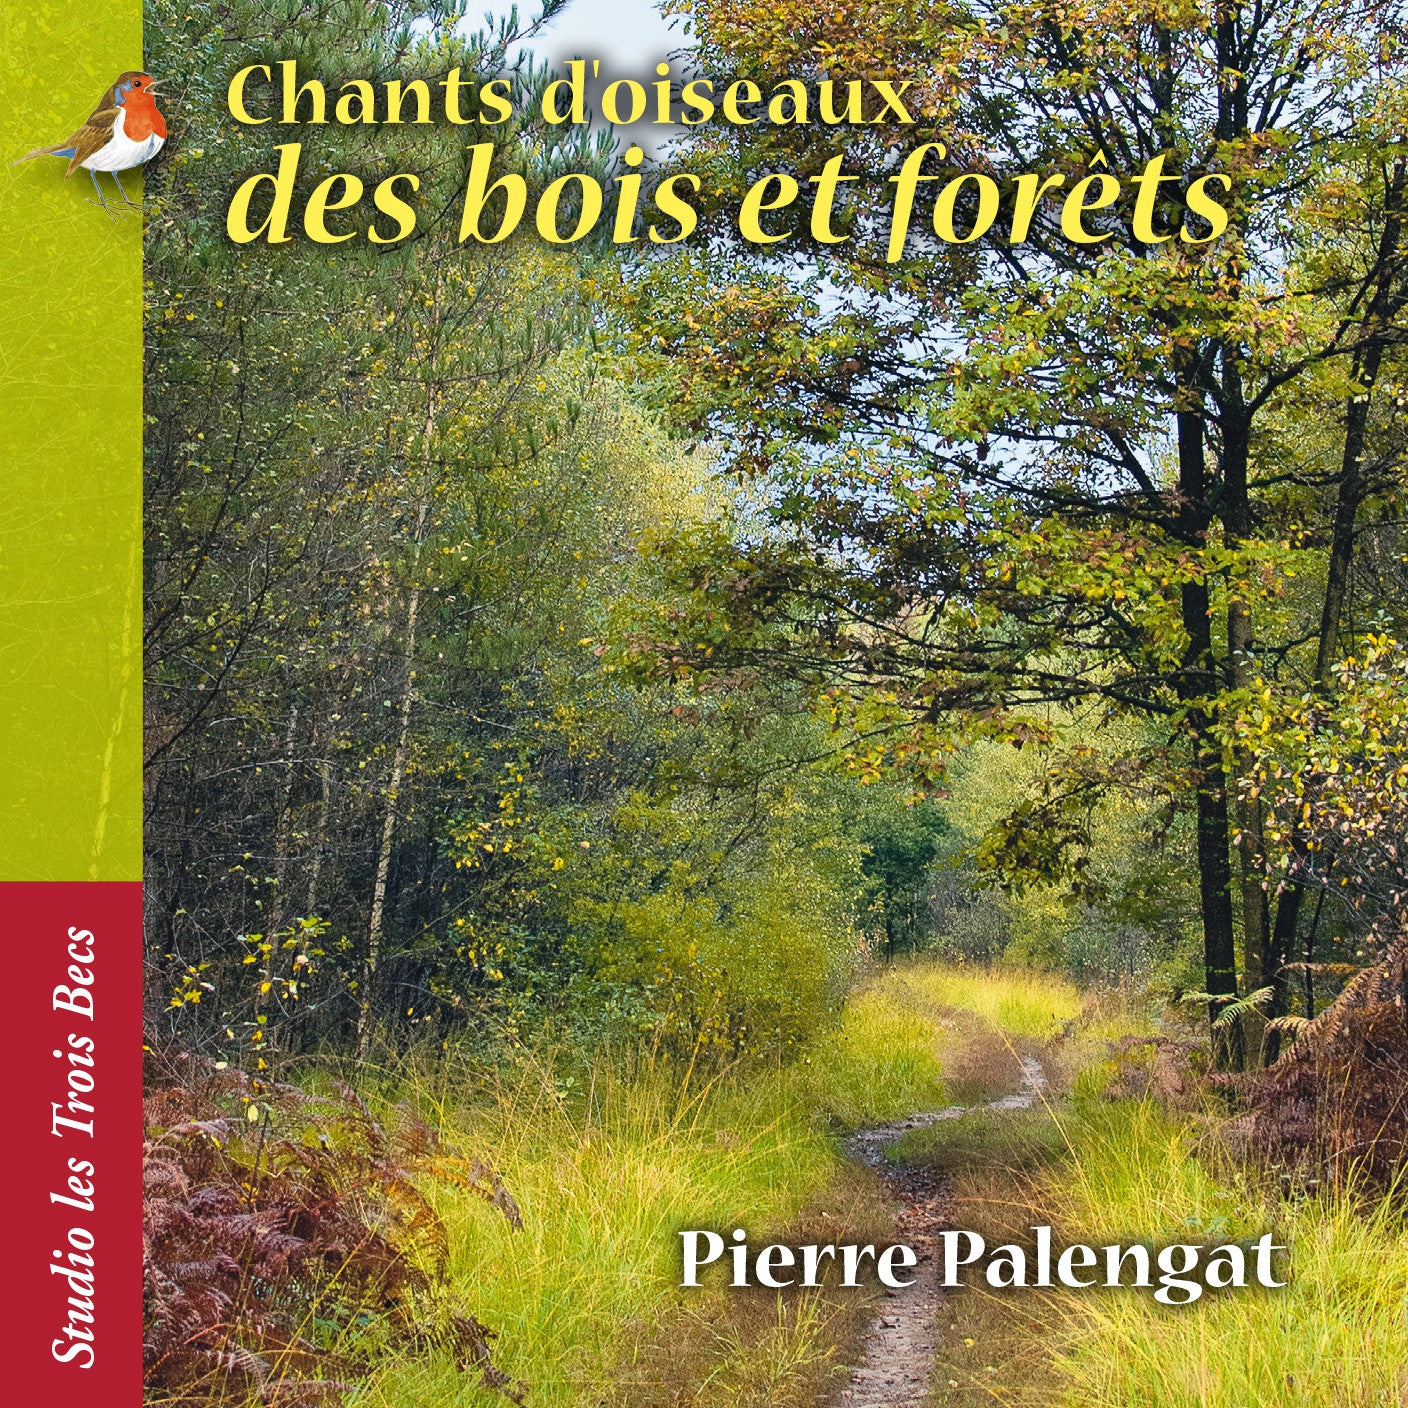 Pochette de : CHANTS D'OISEAUX DES BOIS ET FORETS - PIERRE PALENGAT (CD)